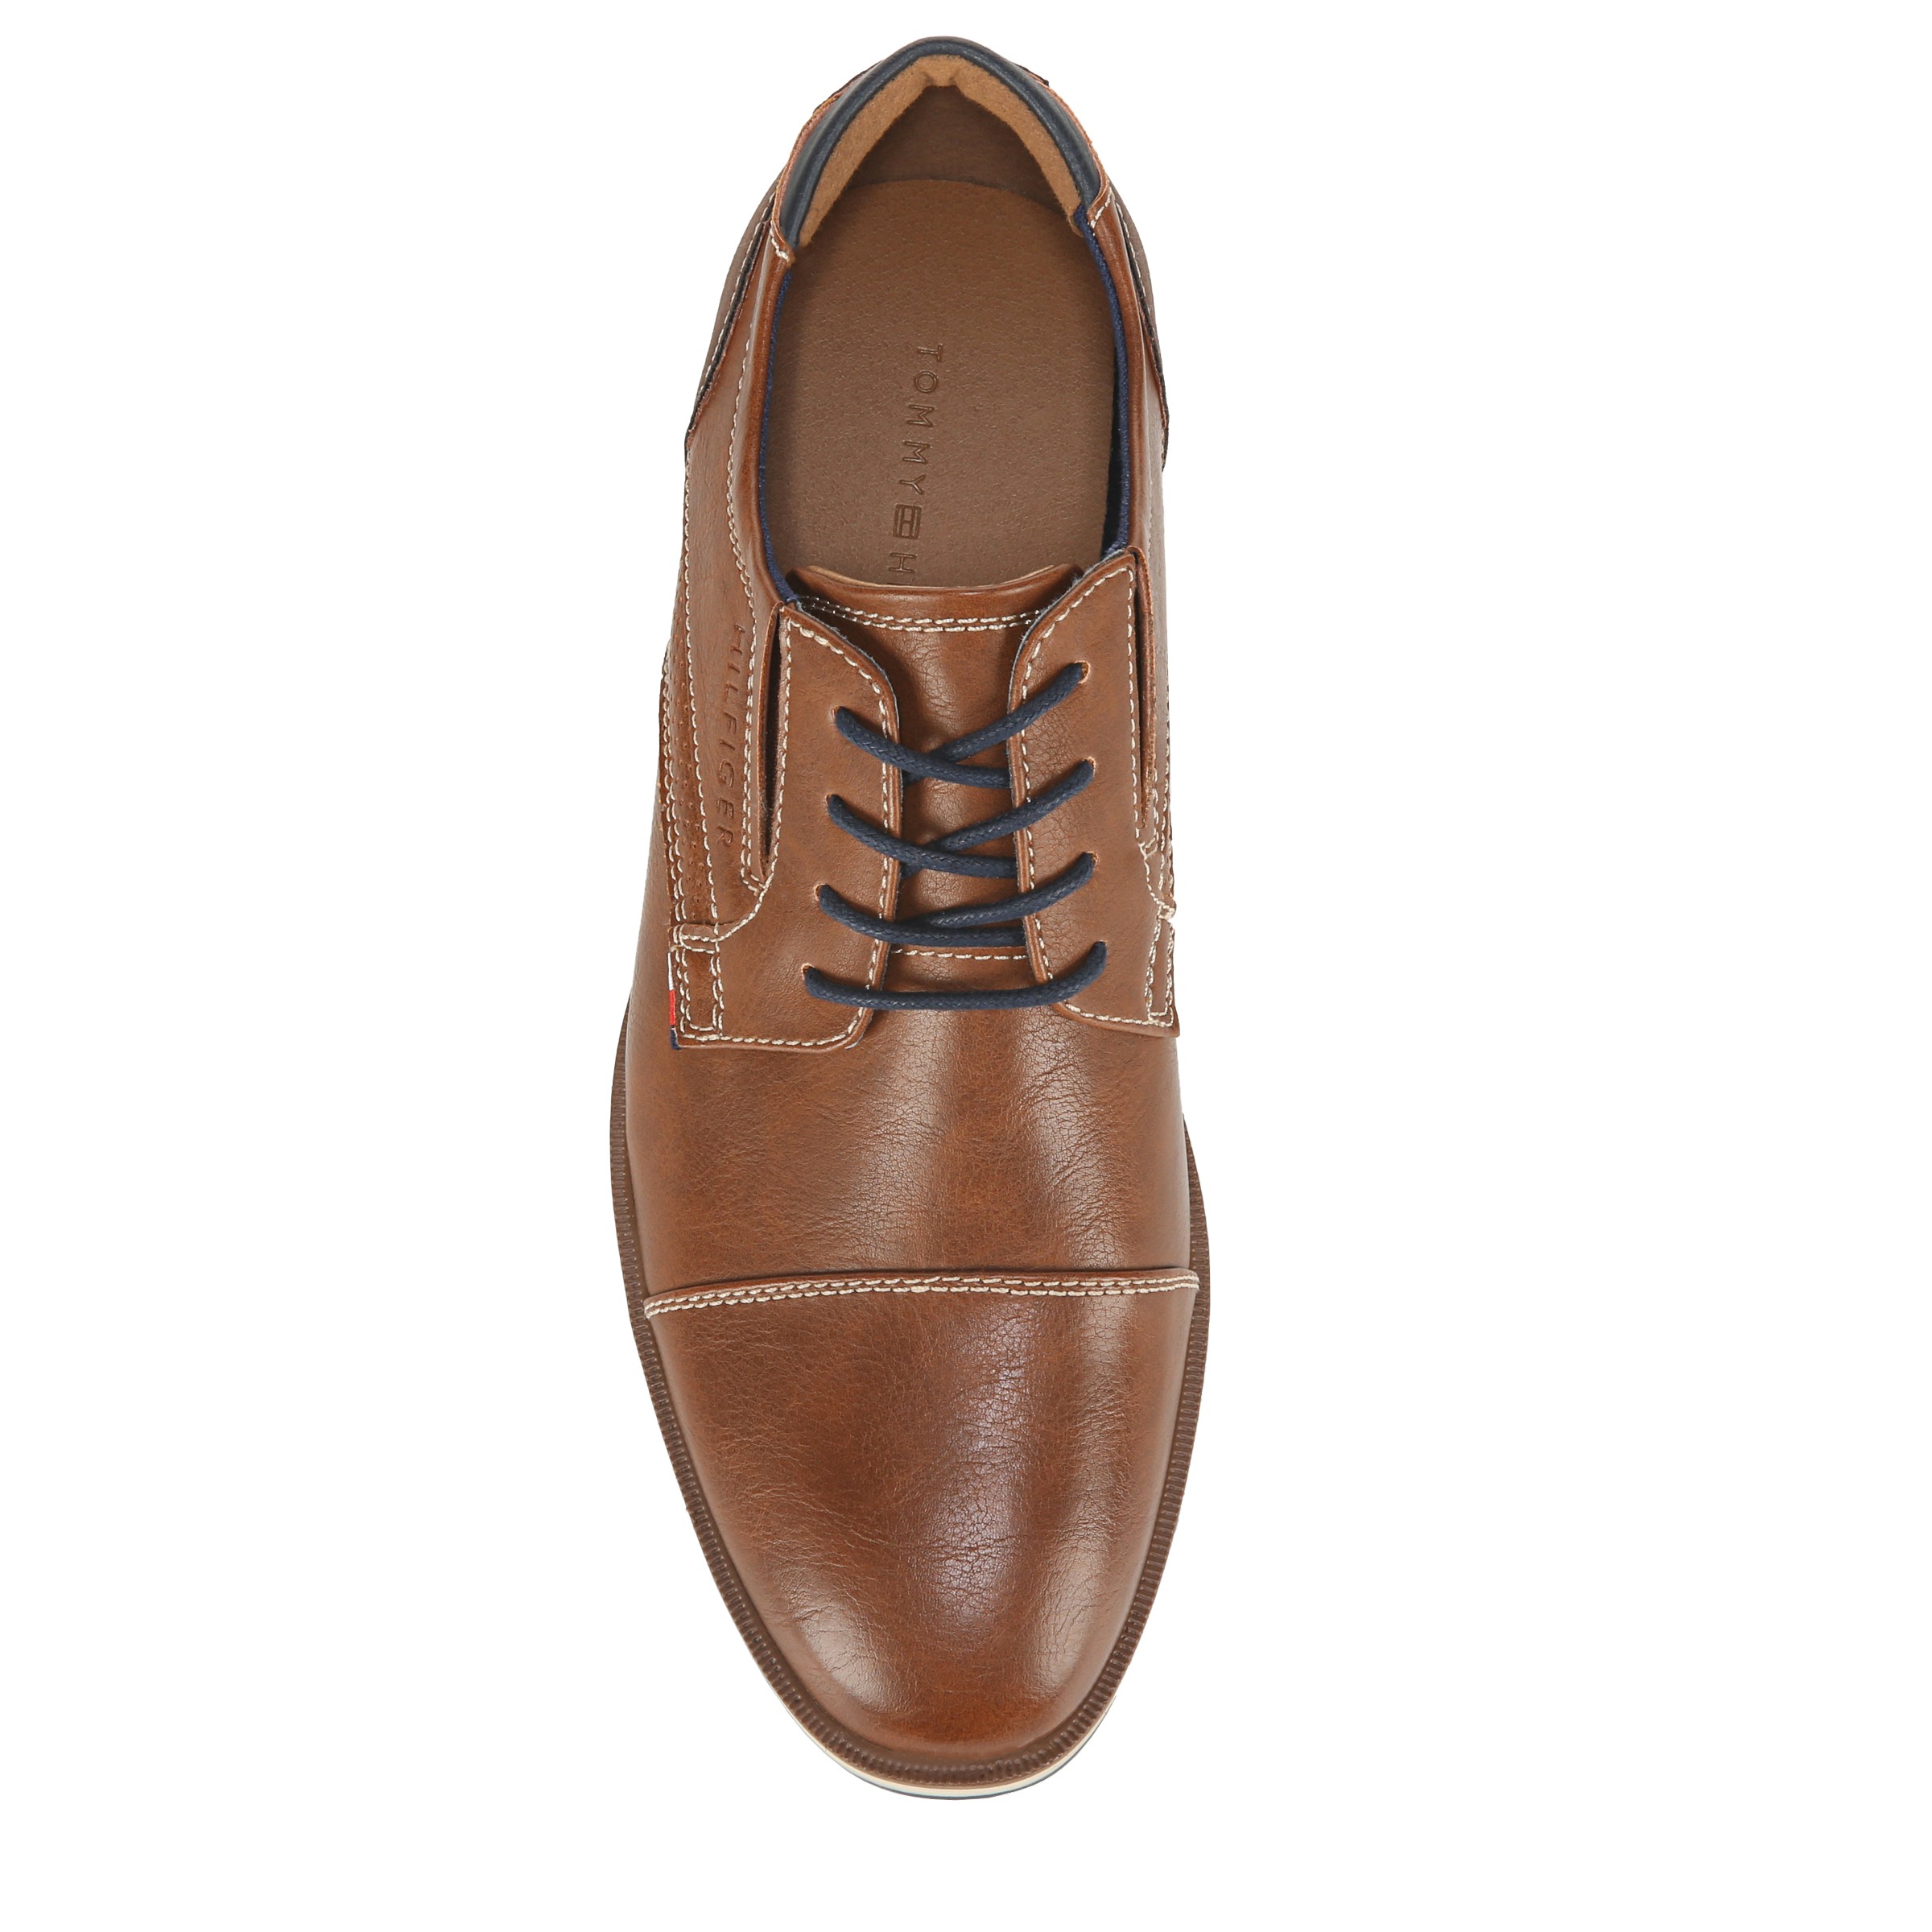 Shop Tommy Hilfiger Shoe online